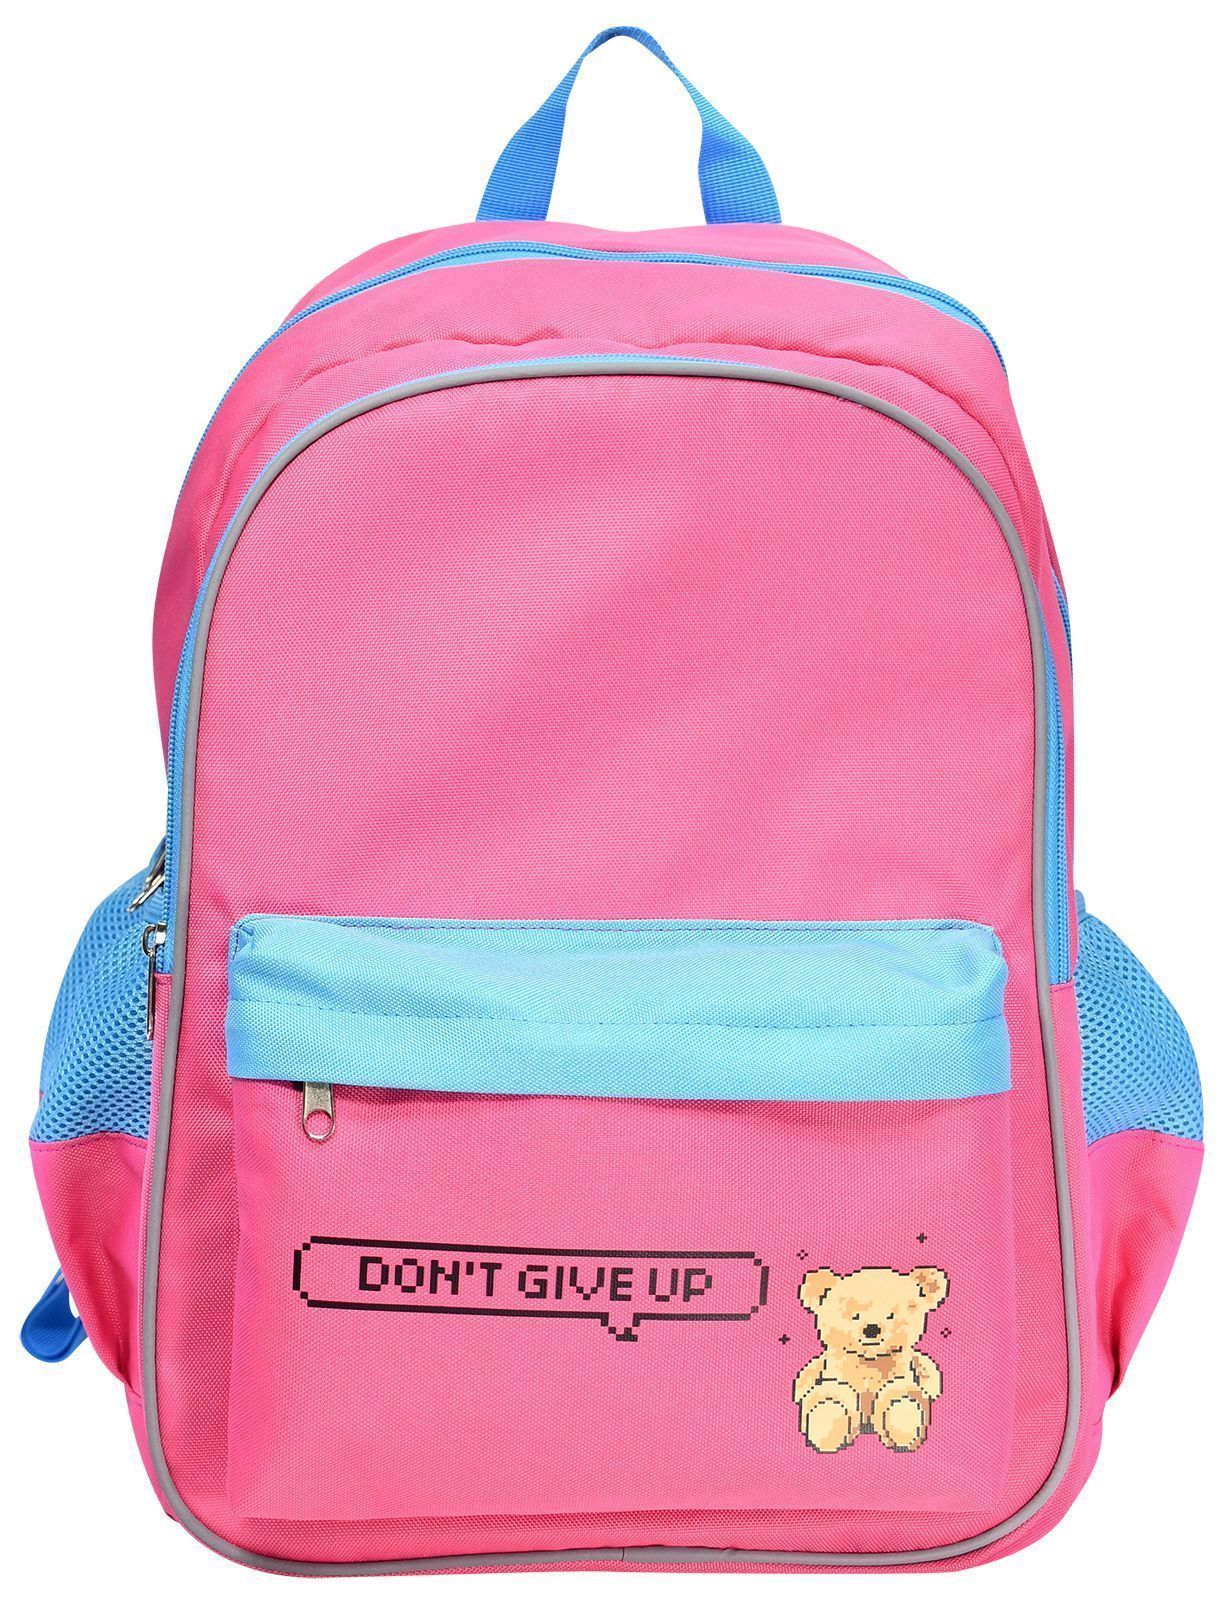 Рюкзак Schoolformat Soft 2 pixel bear, для девочек, 2 отделения, 20,5 л, 42x31x16